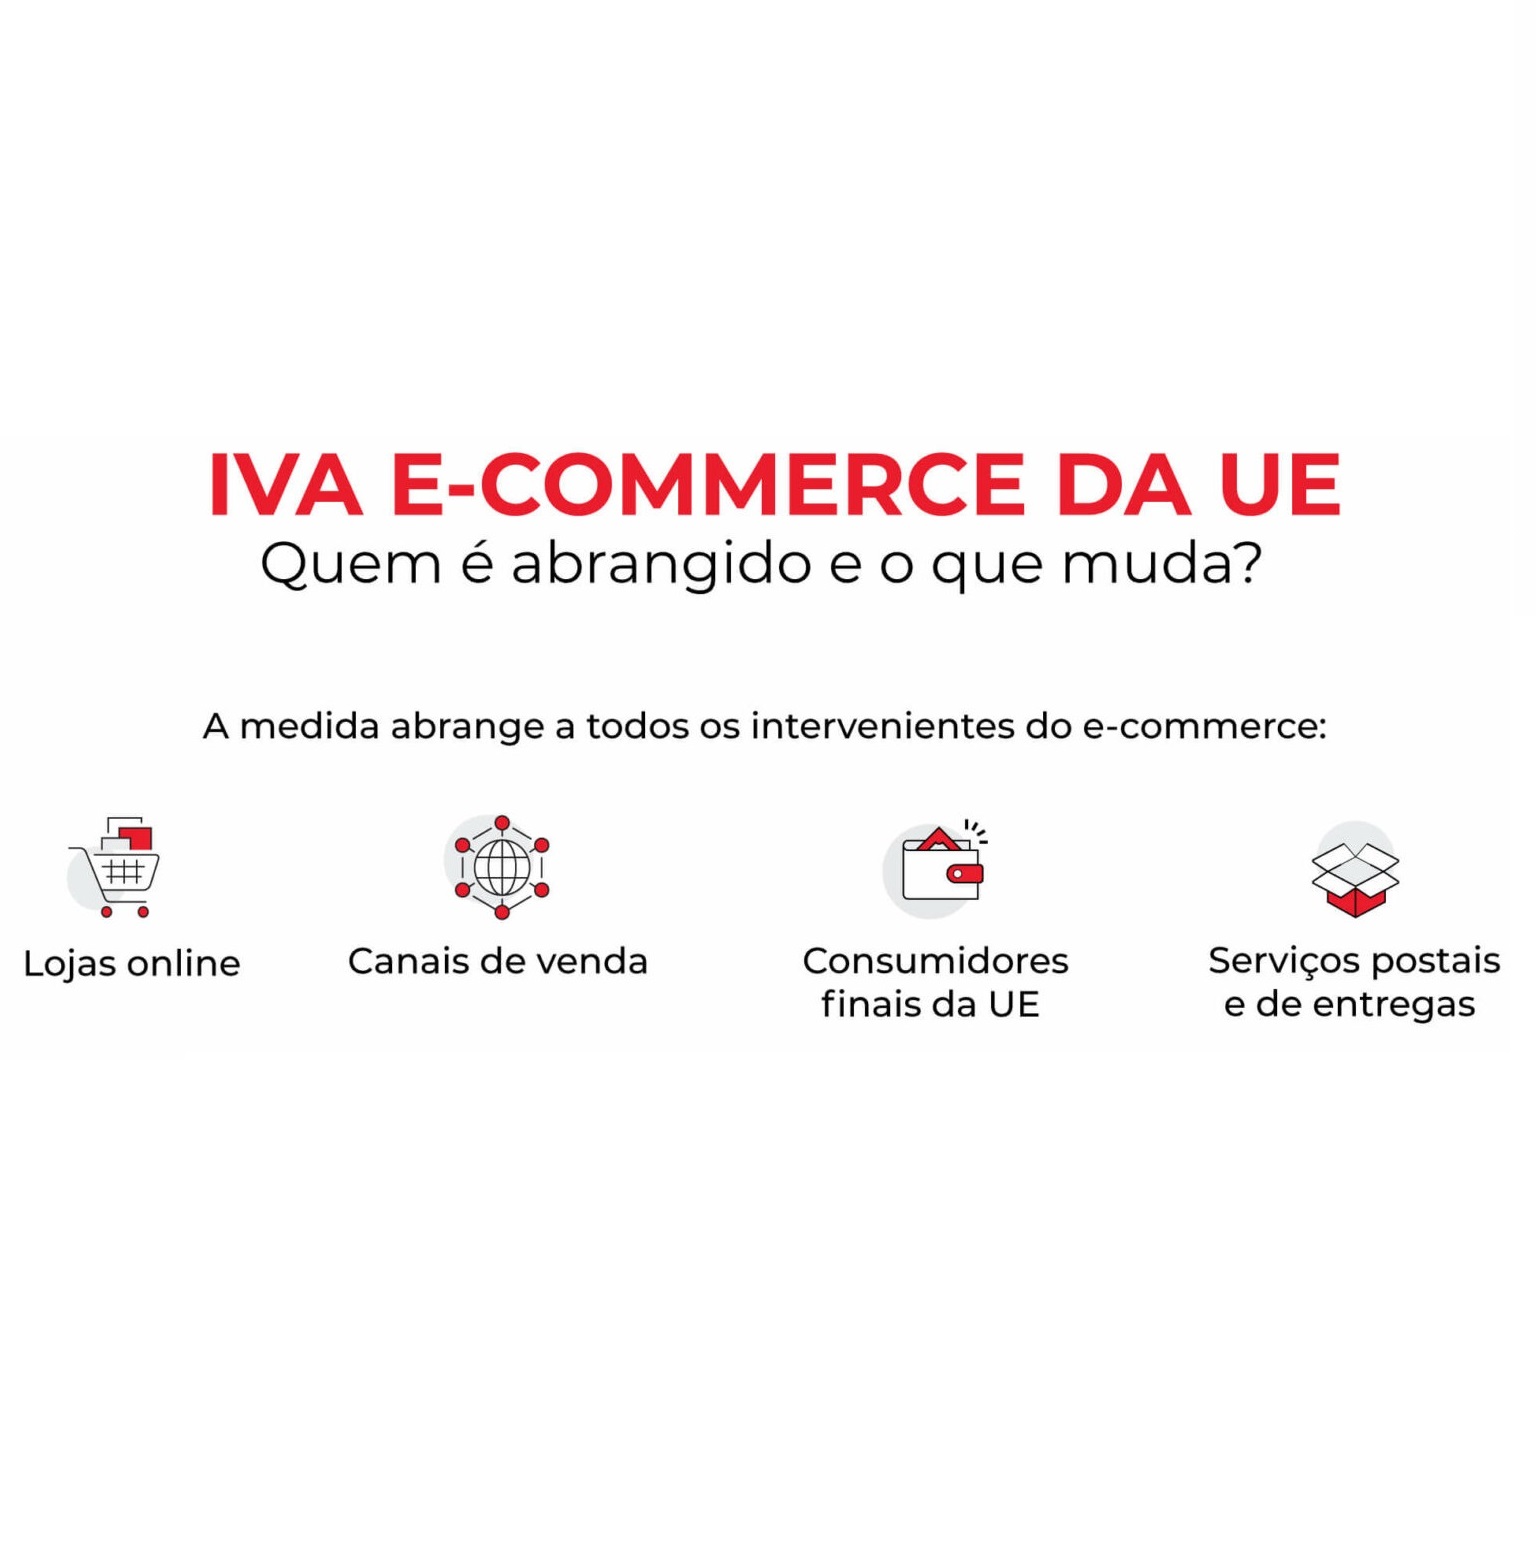 A partir de 1 de julho, o IVA do e-commerce na UE entrará em vigor